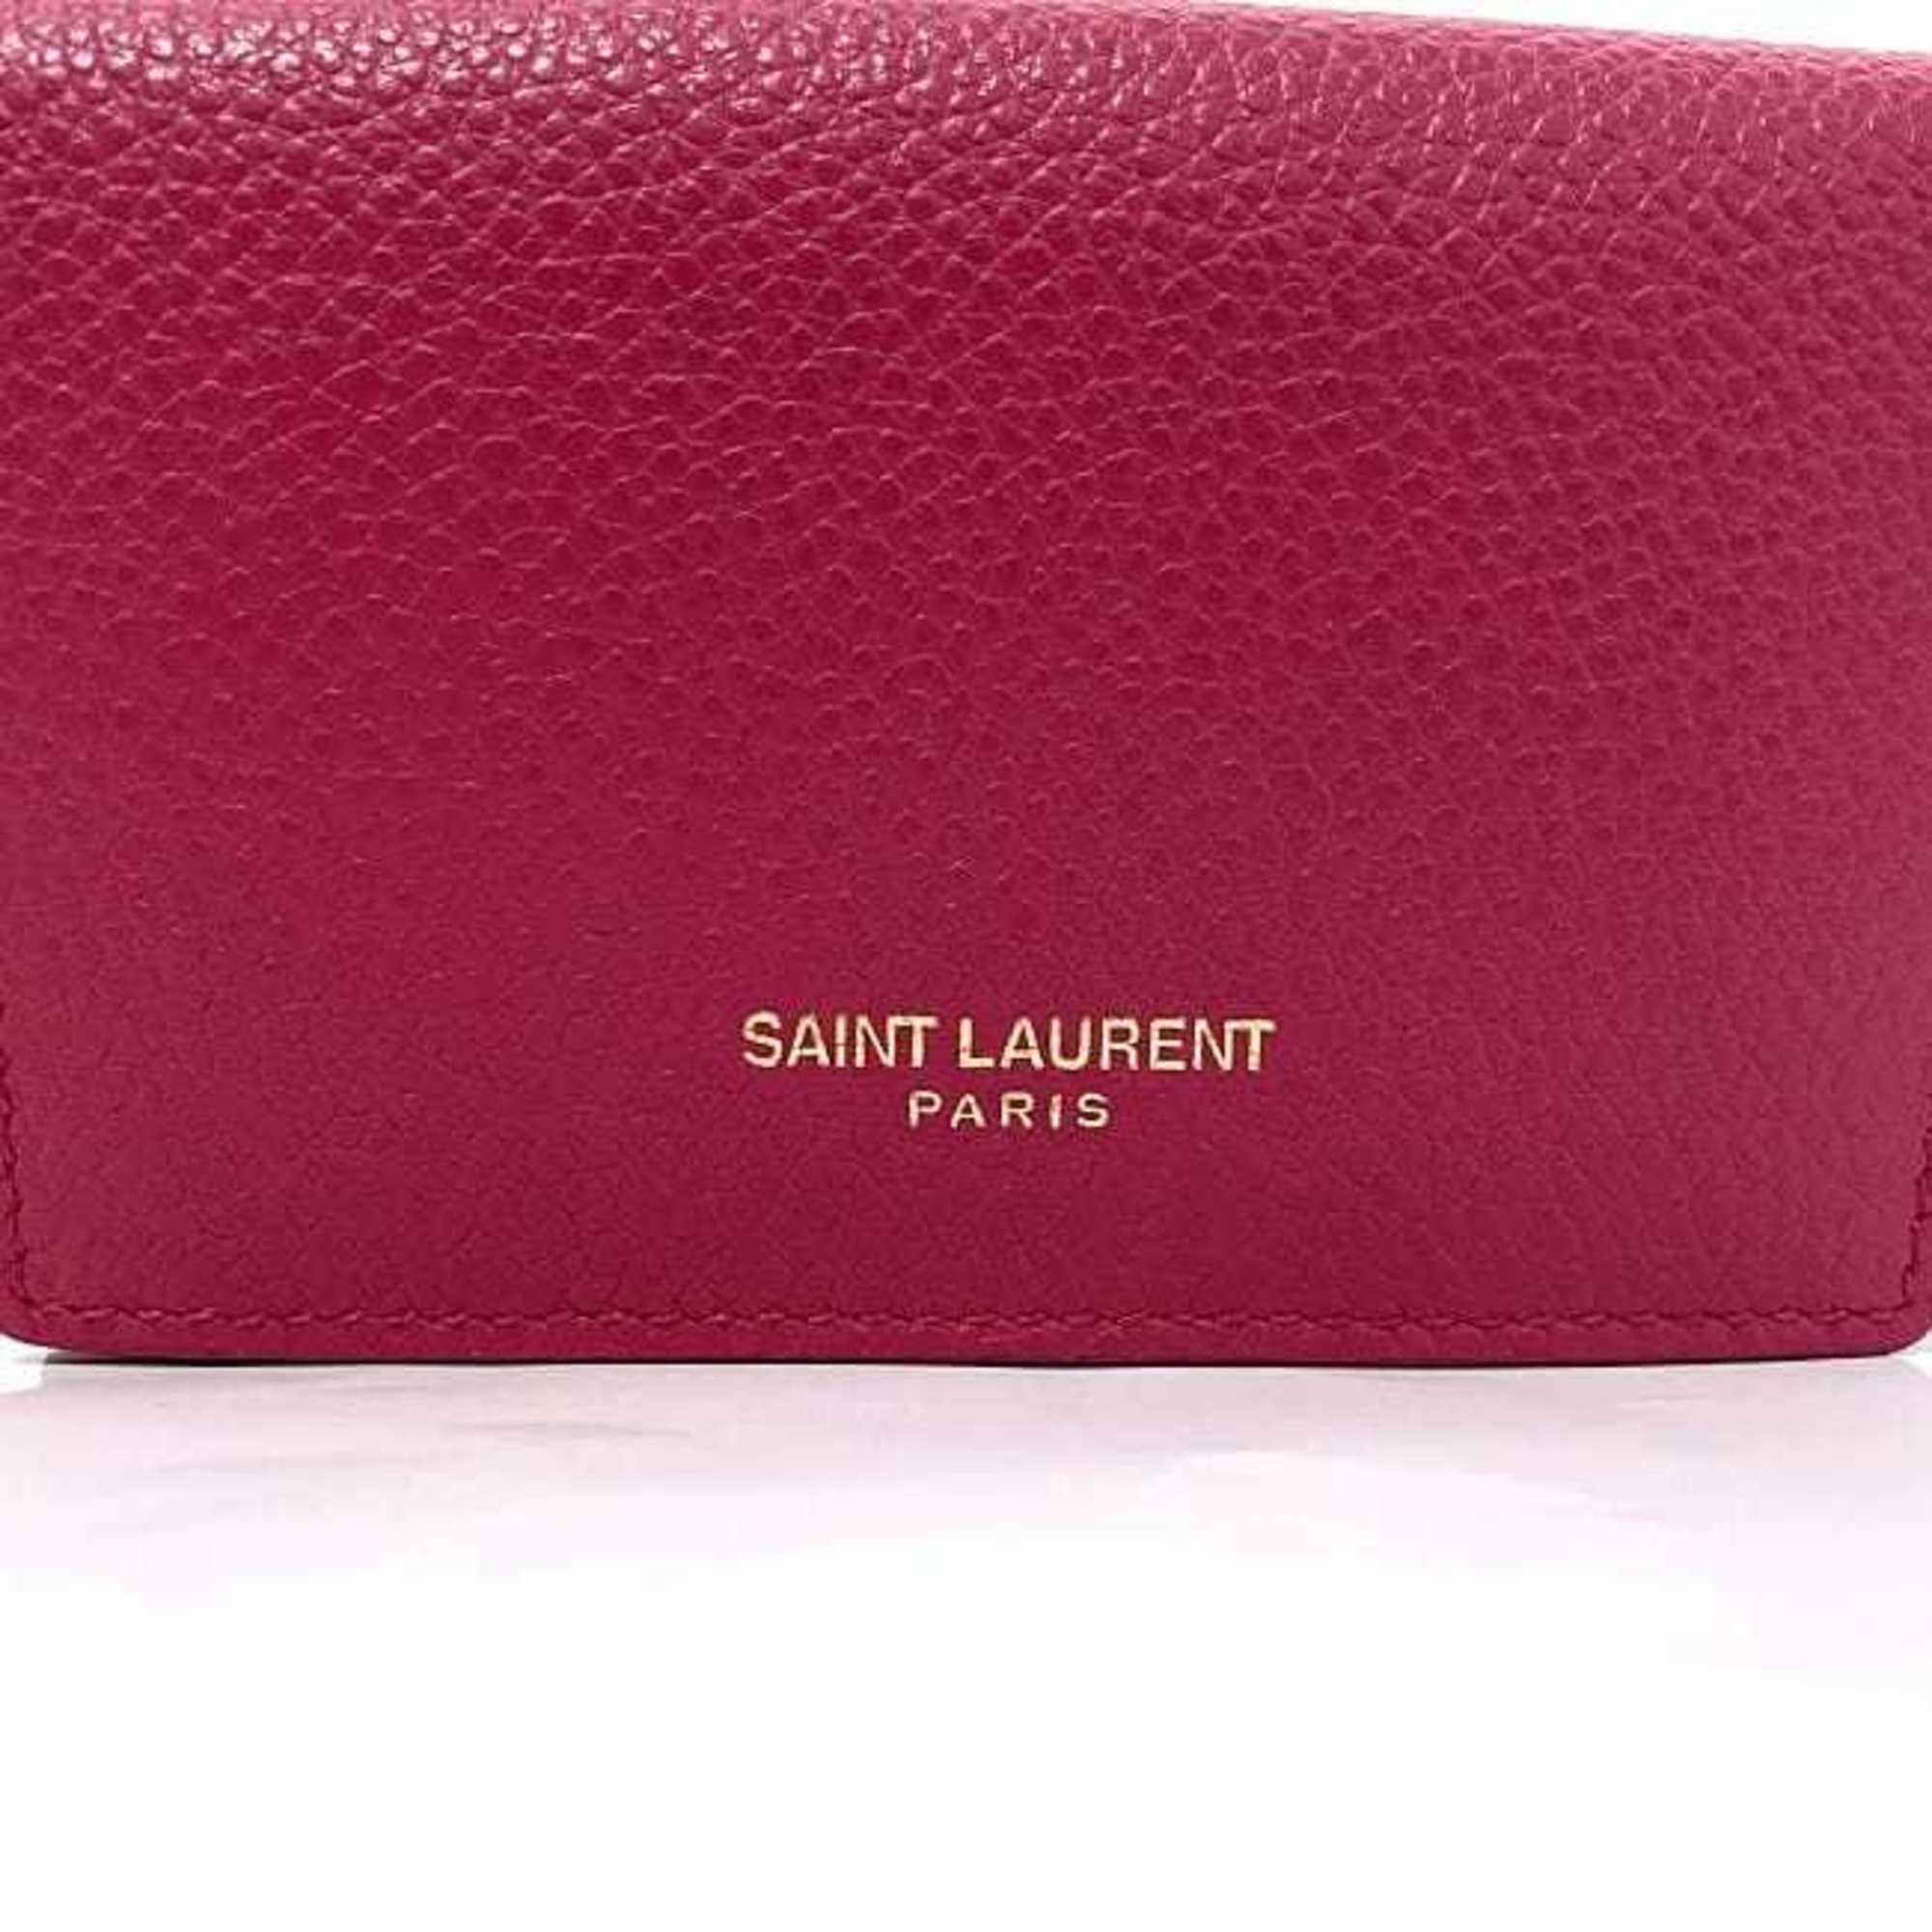 Saint Laurent Trifold Wallet Pink 459784 B680J 5619 Grain Leather SAINT LAURENT Women's